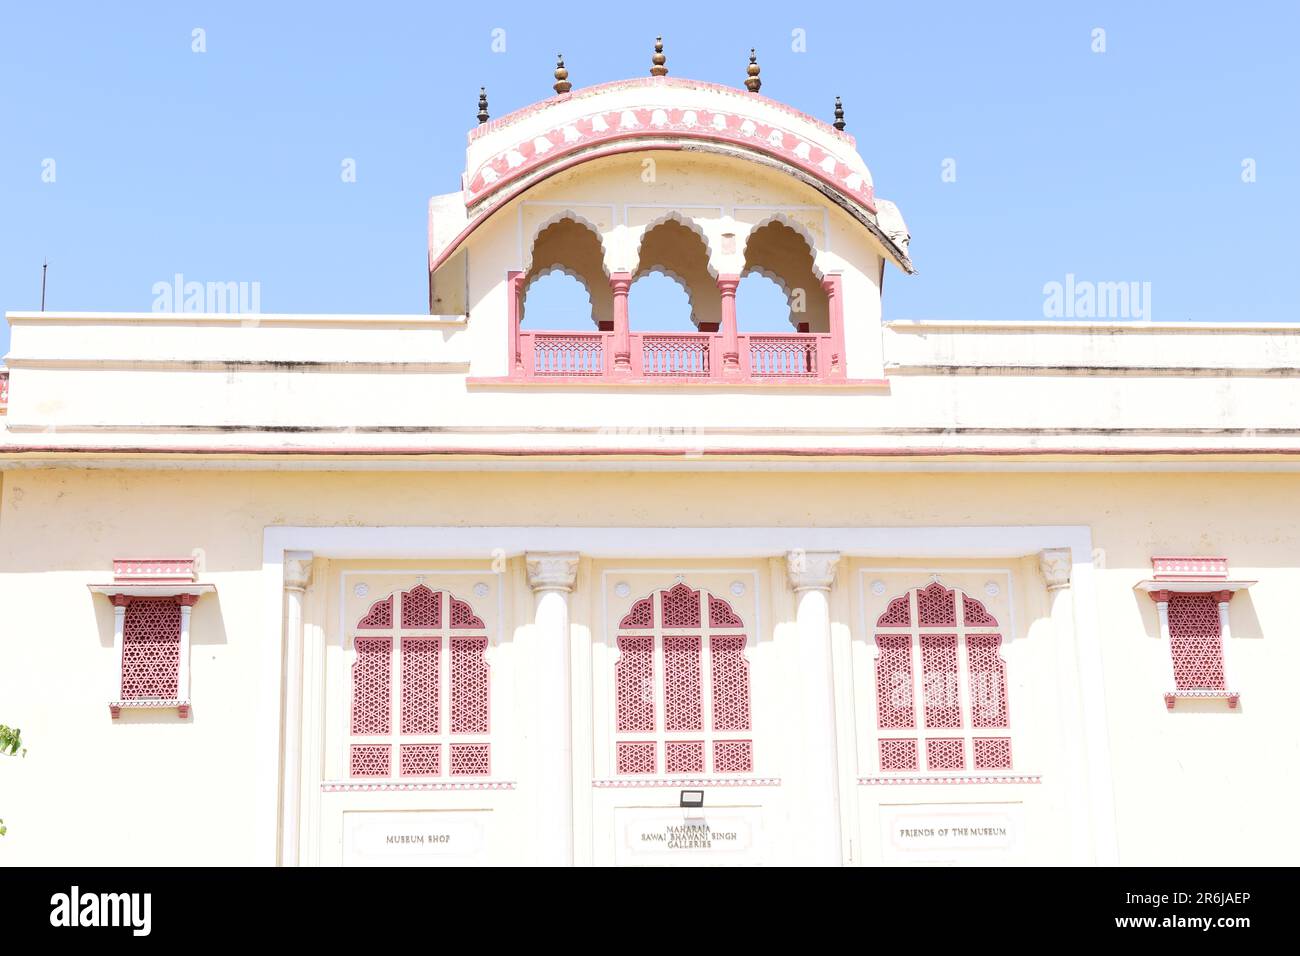 Primo piano di una struttura nel primo cortile del Palazzo della città, Jaipur. Foto Stock